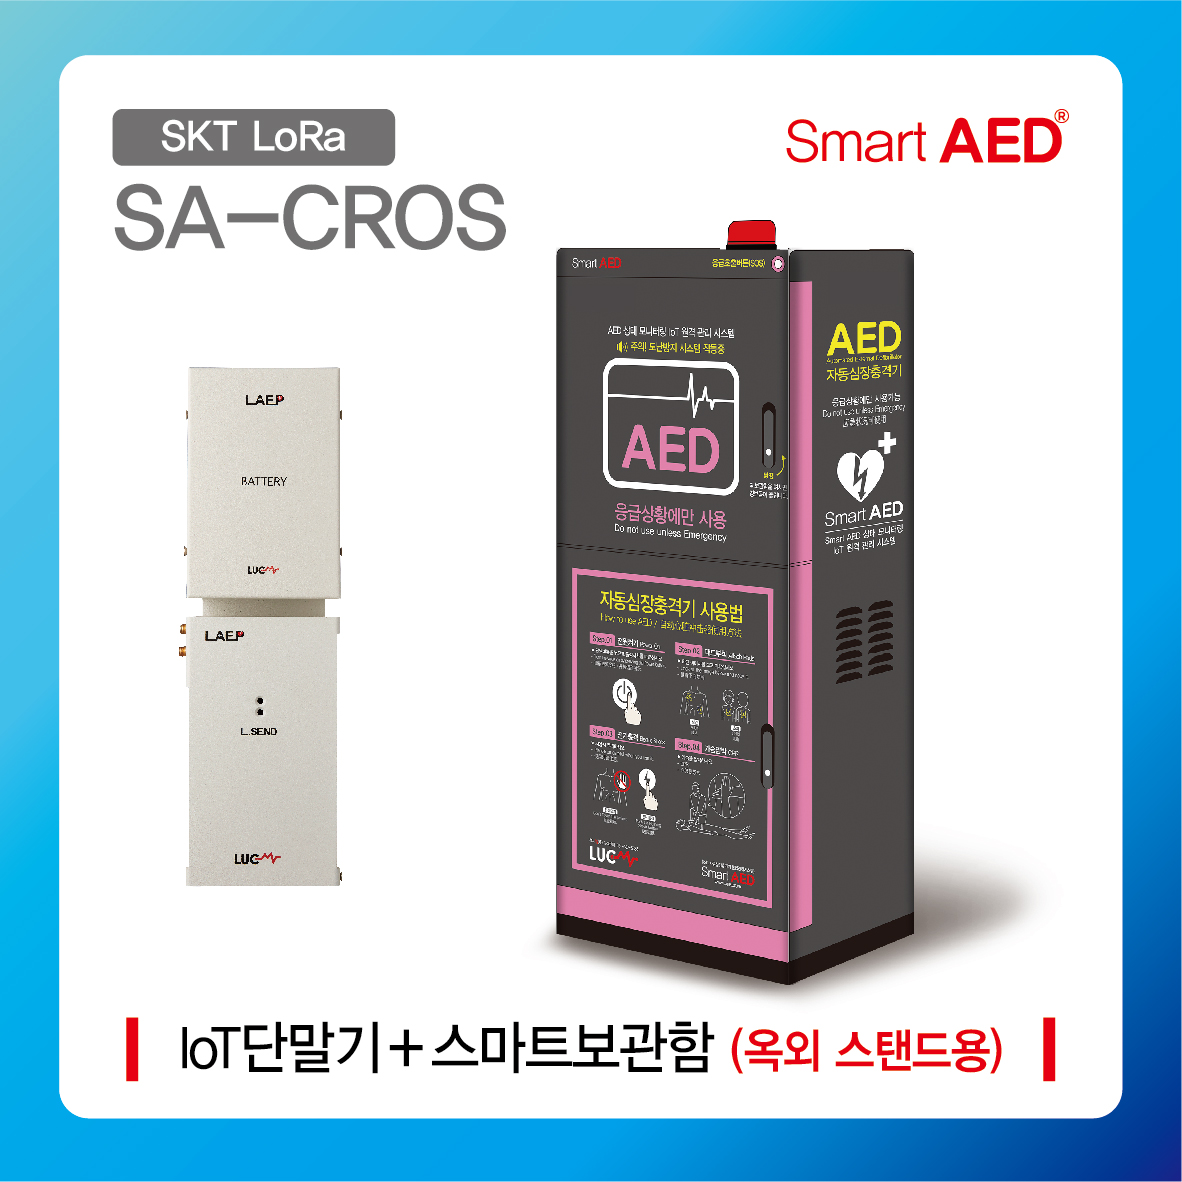 [ SA-CROS ] 스마트 AED 통합모니터링 장치 및 플랫폼